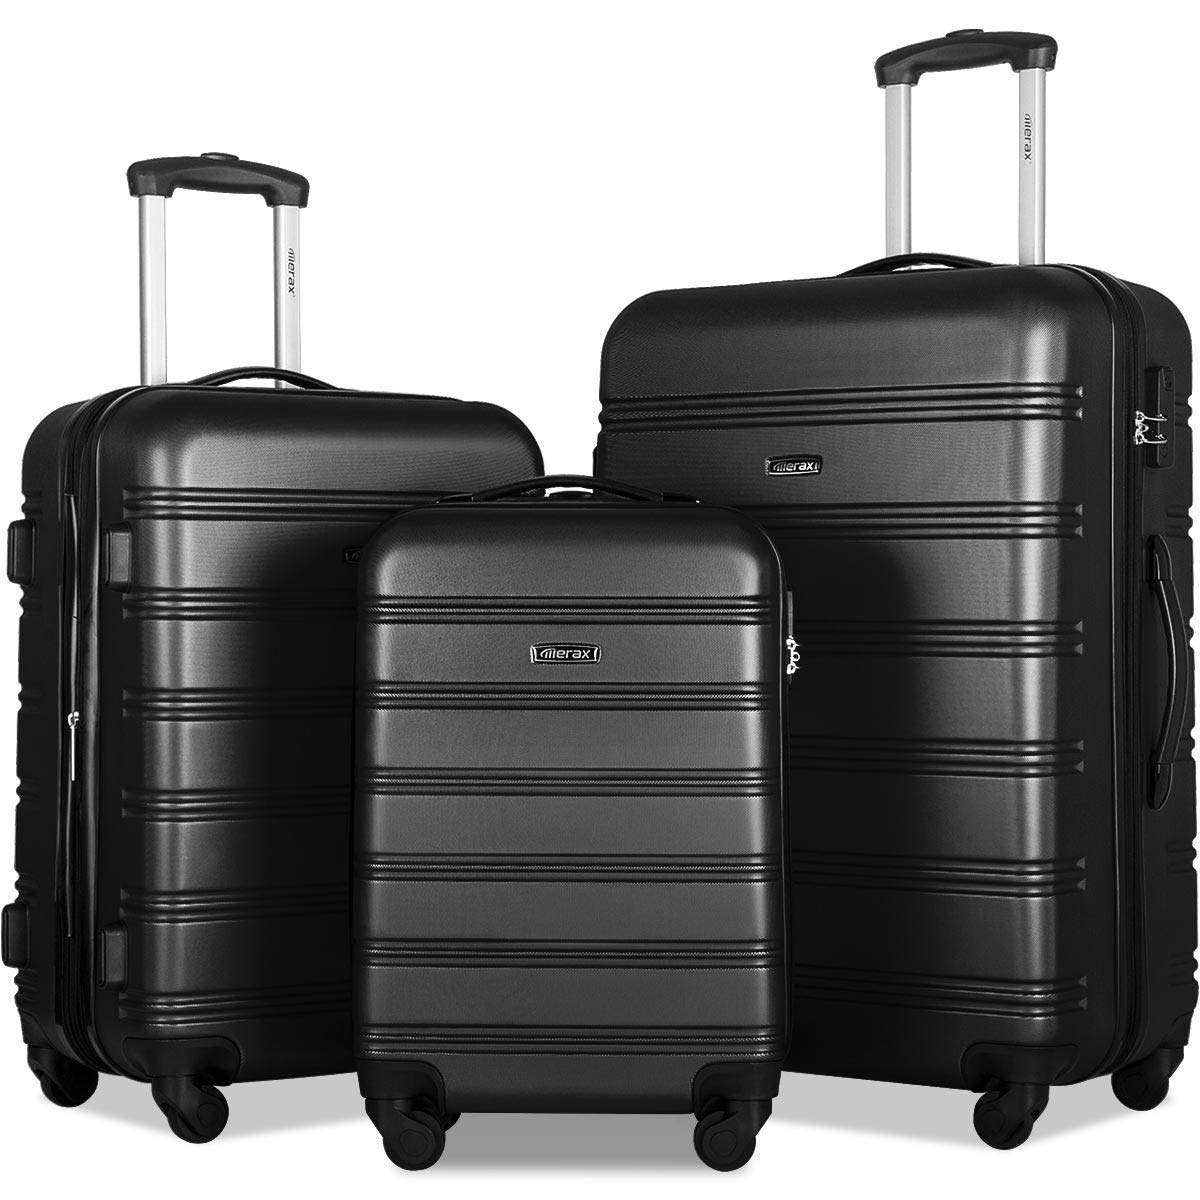 Travelhouse Hardshell Luggage 3 Piece Set Suitcase PP